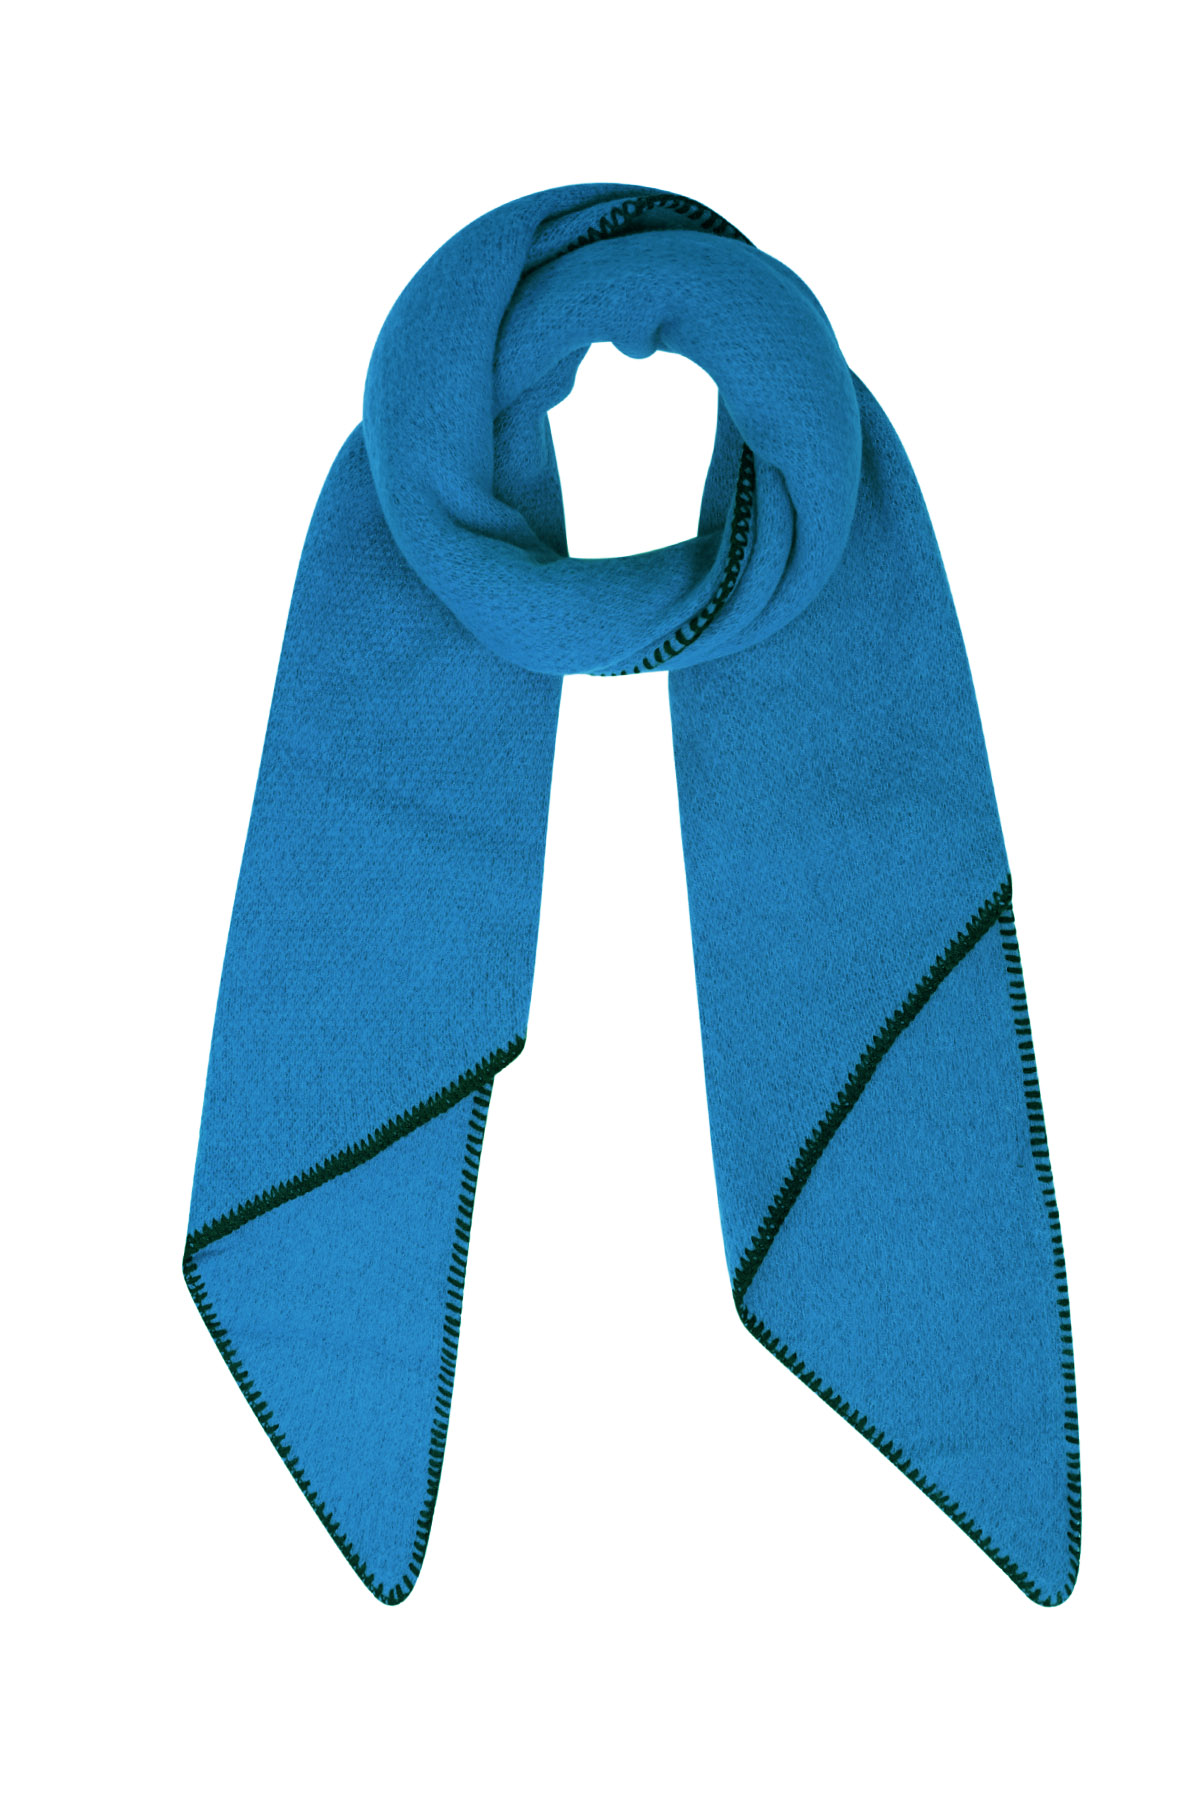 Wintersjaal eenkleurig met zwarte stiksels - donkerblauw 